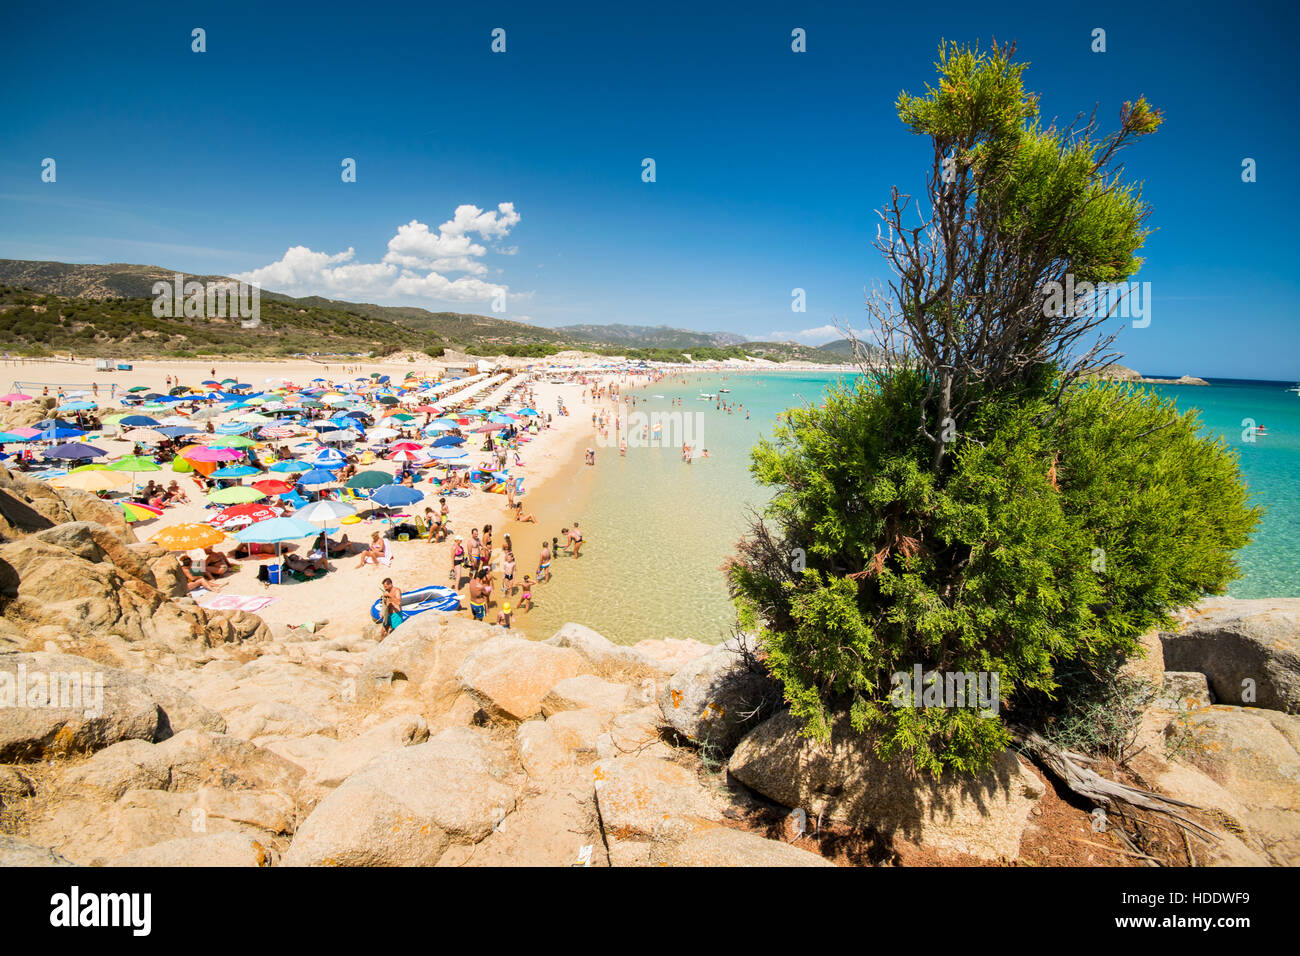 Chia, Italien - 18. August 2016: Die wunderbare Strände und kristallklares Wasser der Bucht von Chia, Sardinien, Italien. Stockfoto